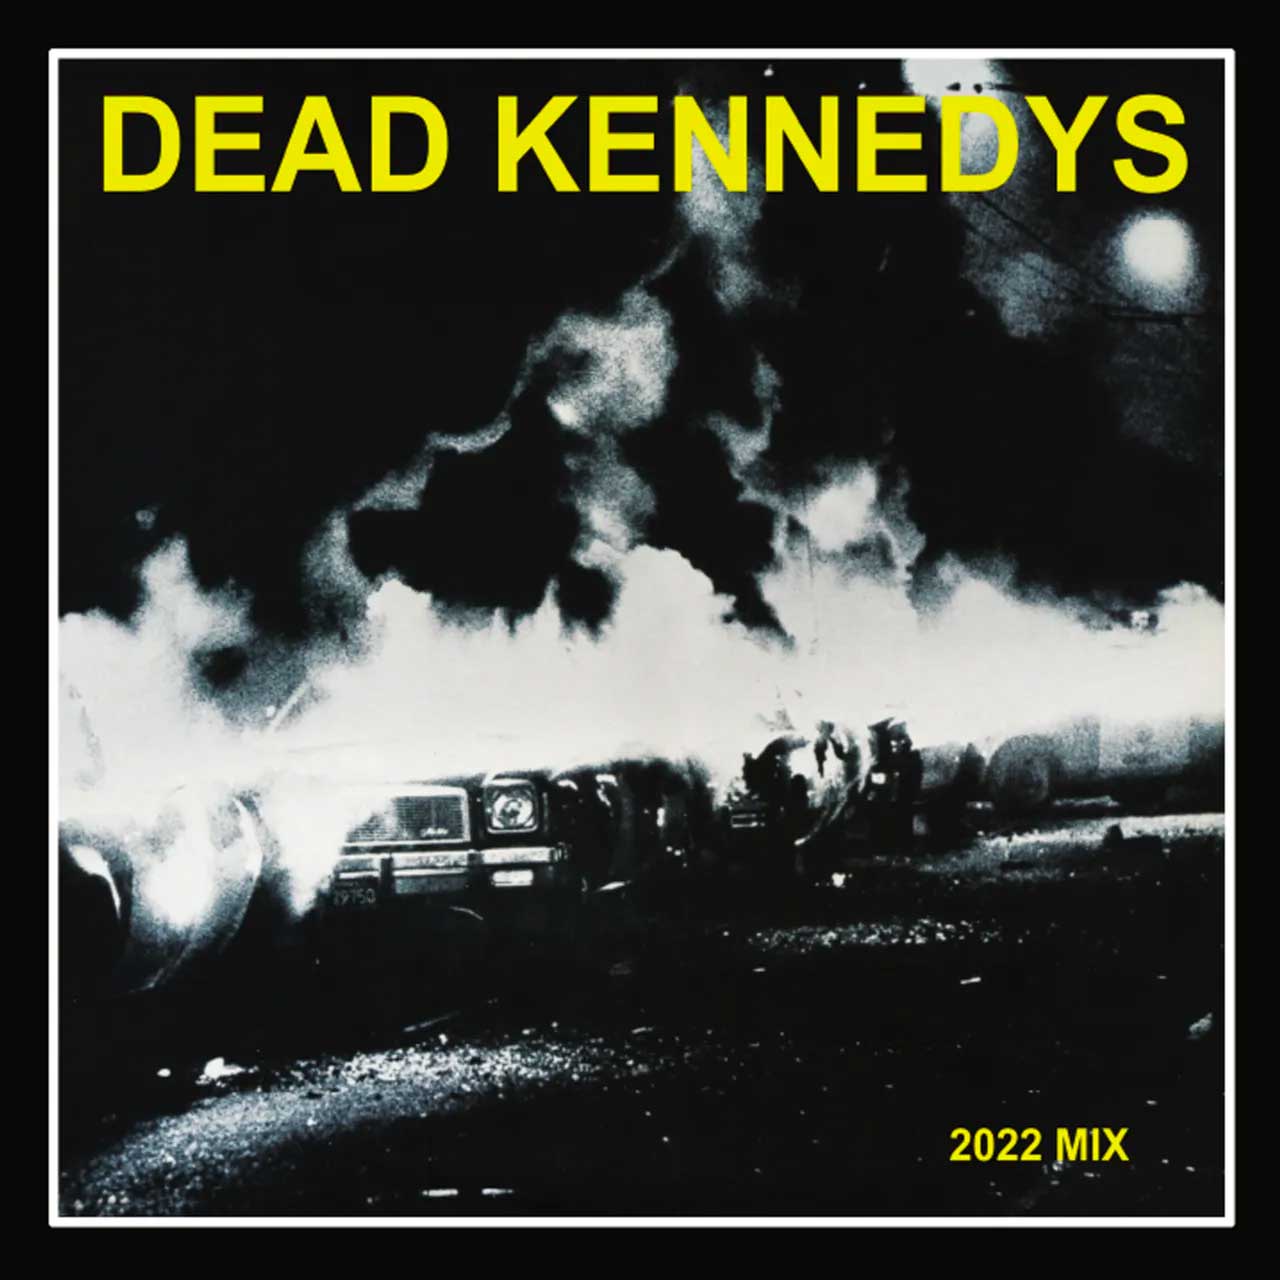 Tapa de la reedición de "Fresh Fruit for Rotting Vegetable", disco de Dead Kennedys